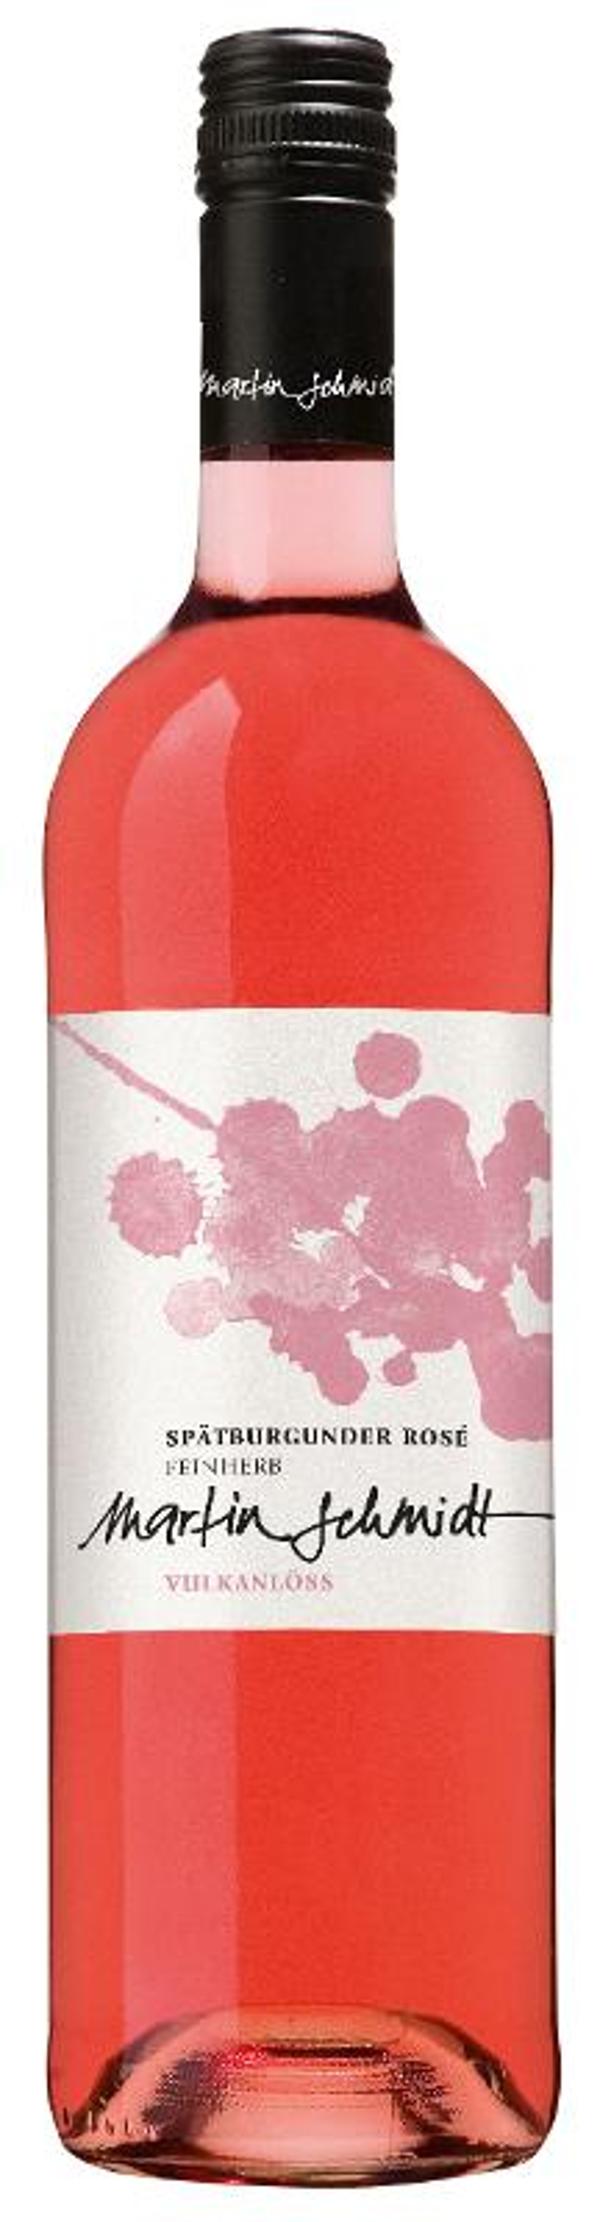 Produktfoto zu Vulkanlöss rosé, 0,75l